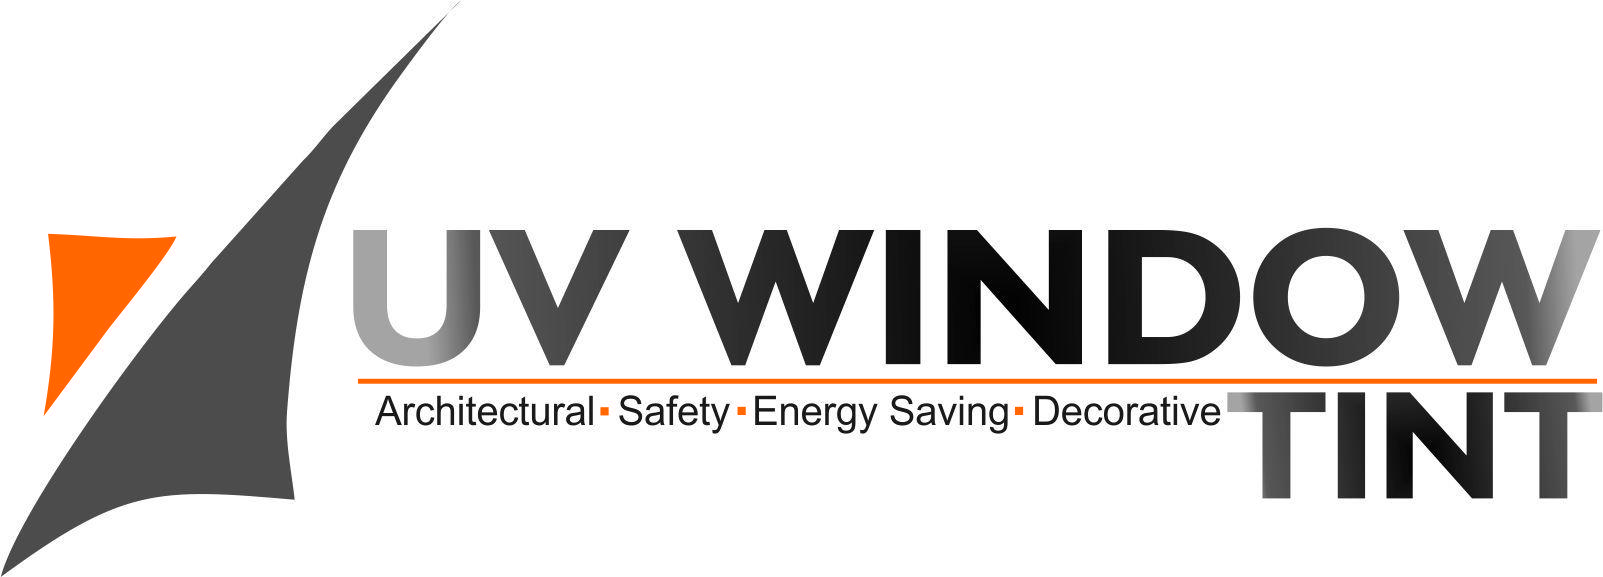 Tint Logo - UV Window Tint Symbolic Safety Signs, Public Safety, Signage